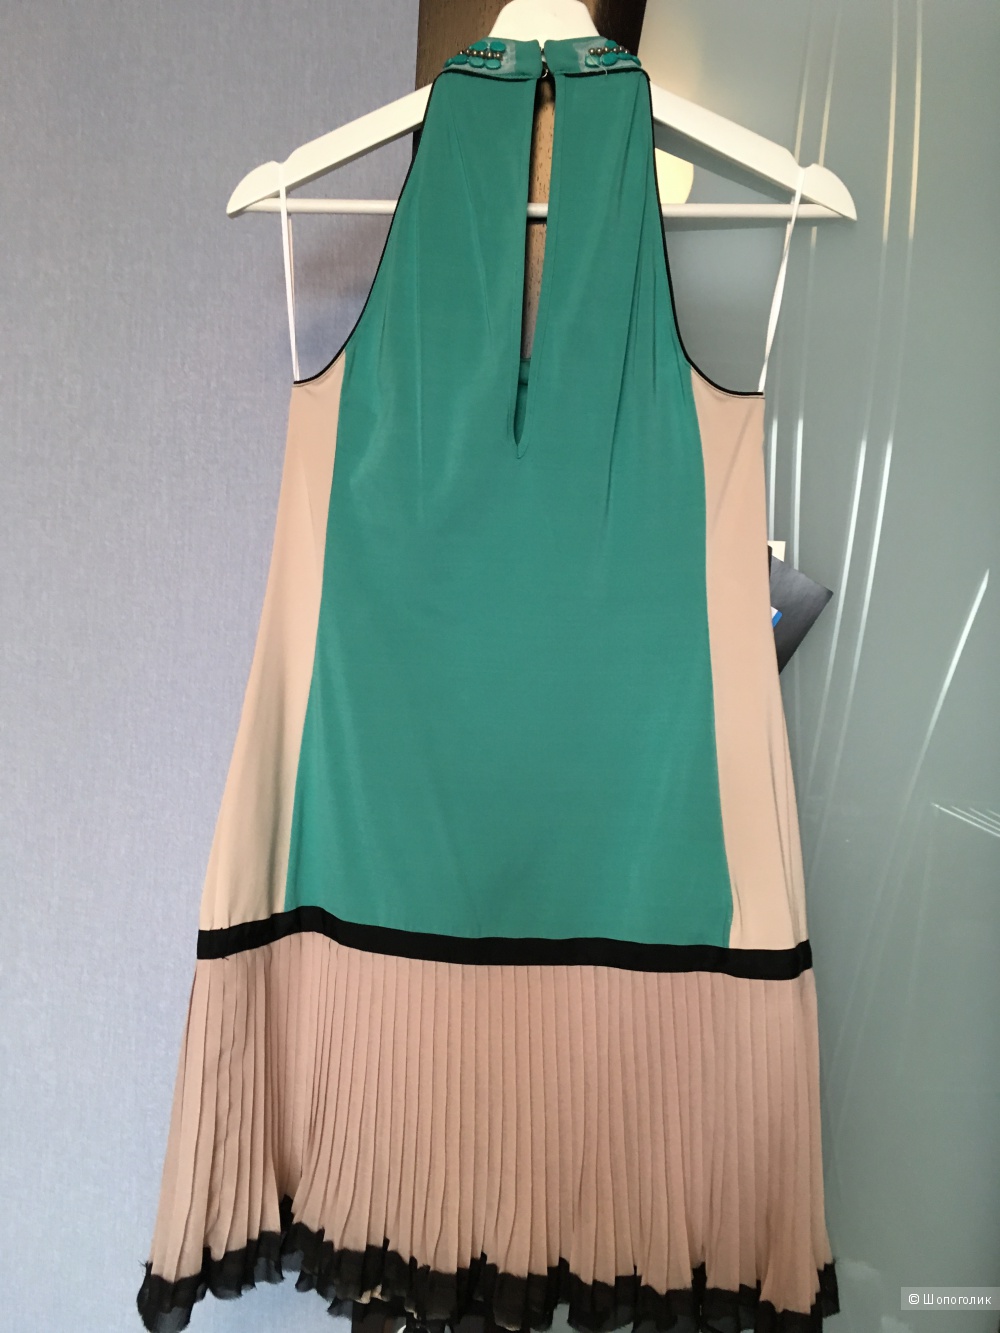 Платье PF PAOLA FRANI, с YOOX, новое, 42 ит размер, расшито украшениями.